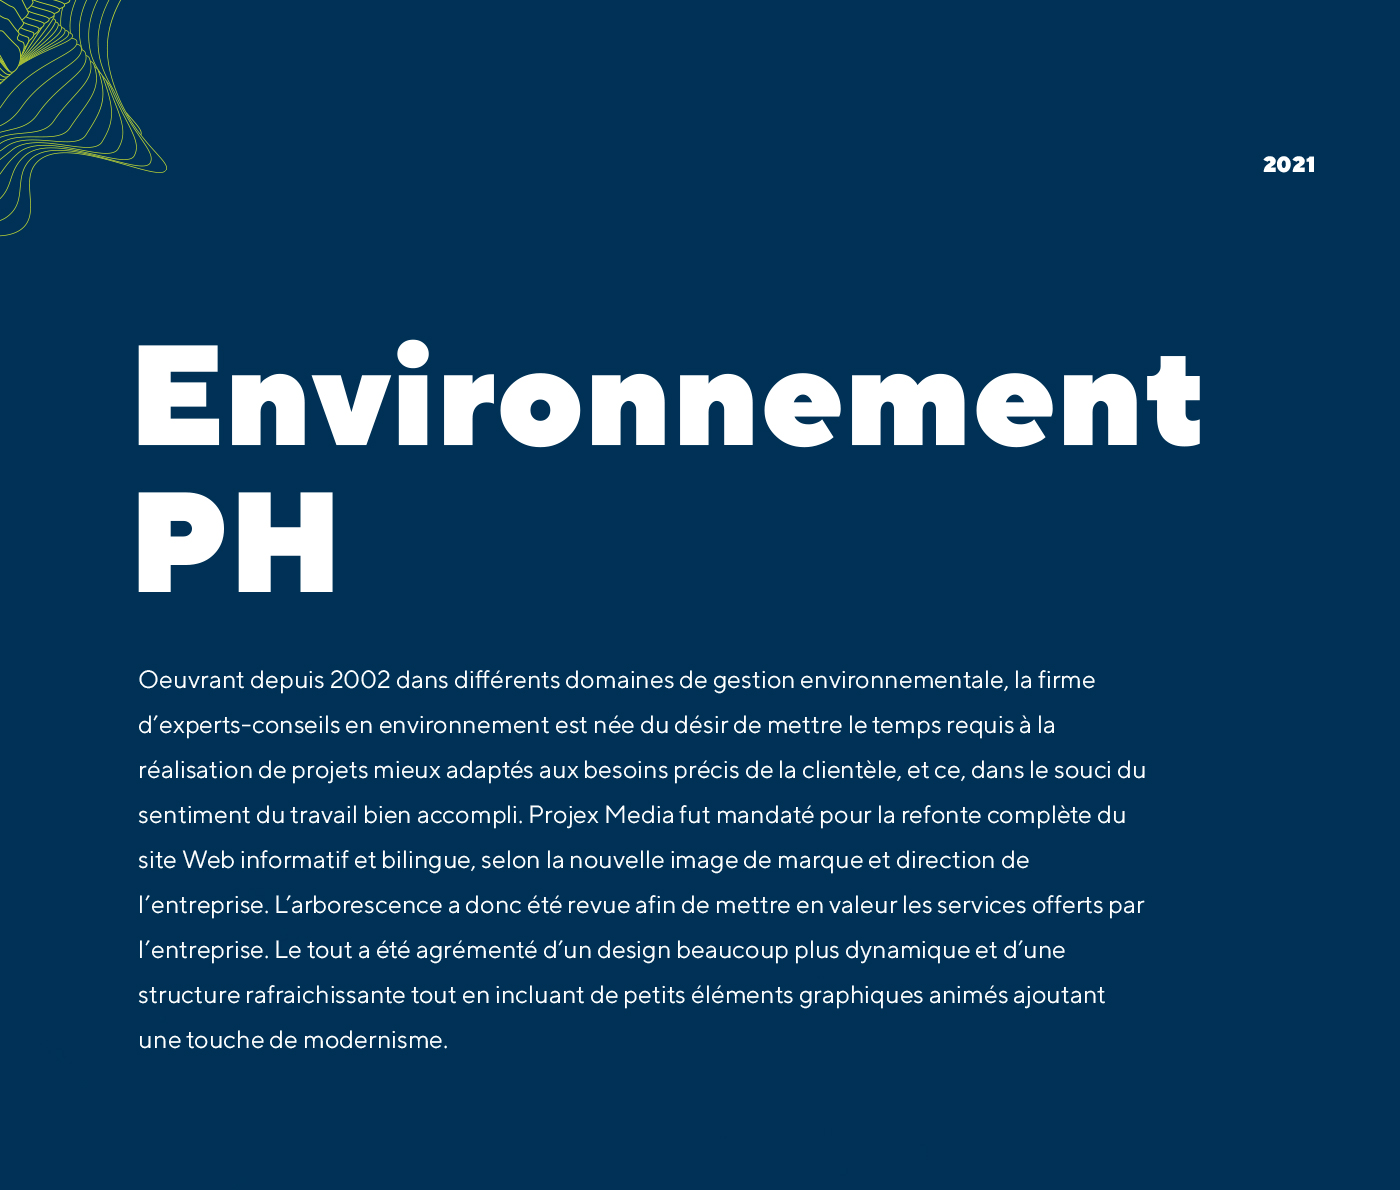 Site Web d'Environnement PH - Firme d'experts-conseils en environnement / 2021 - Réalisation signée Projex Media